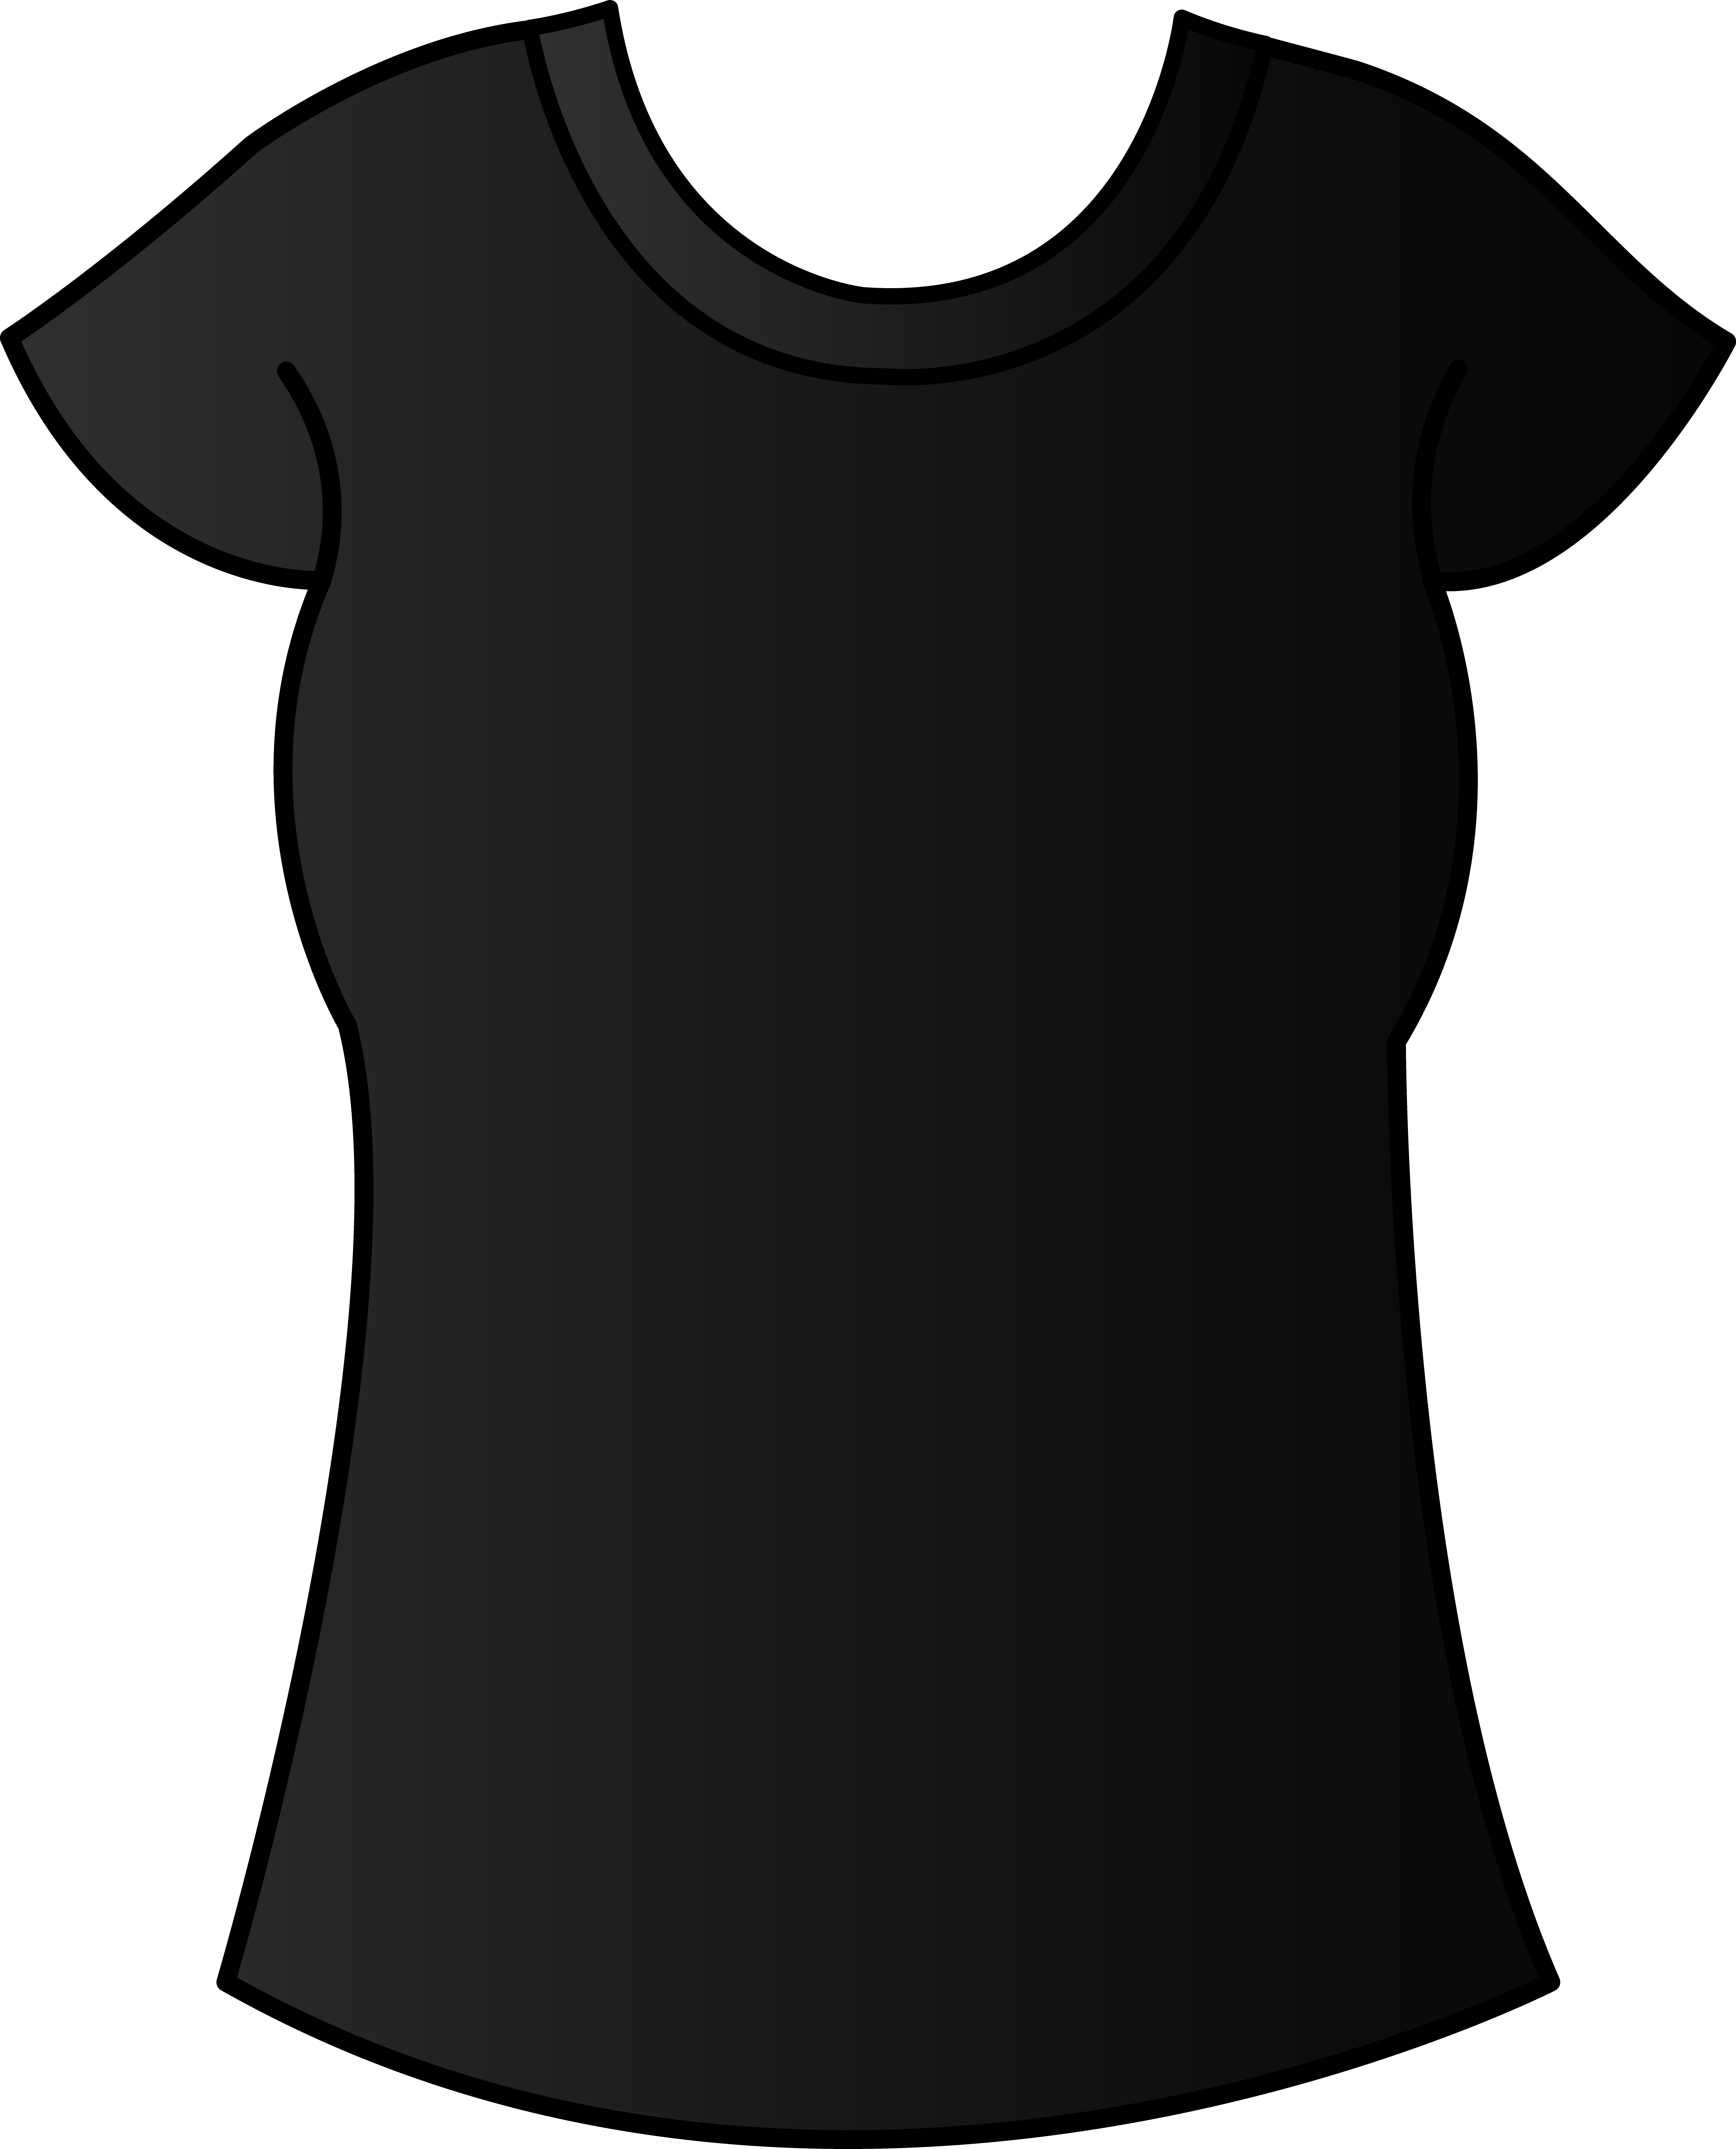 Best Photos of Black T-Shirt Template - Black T-Shirt Clip Art ...